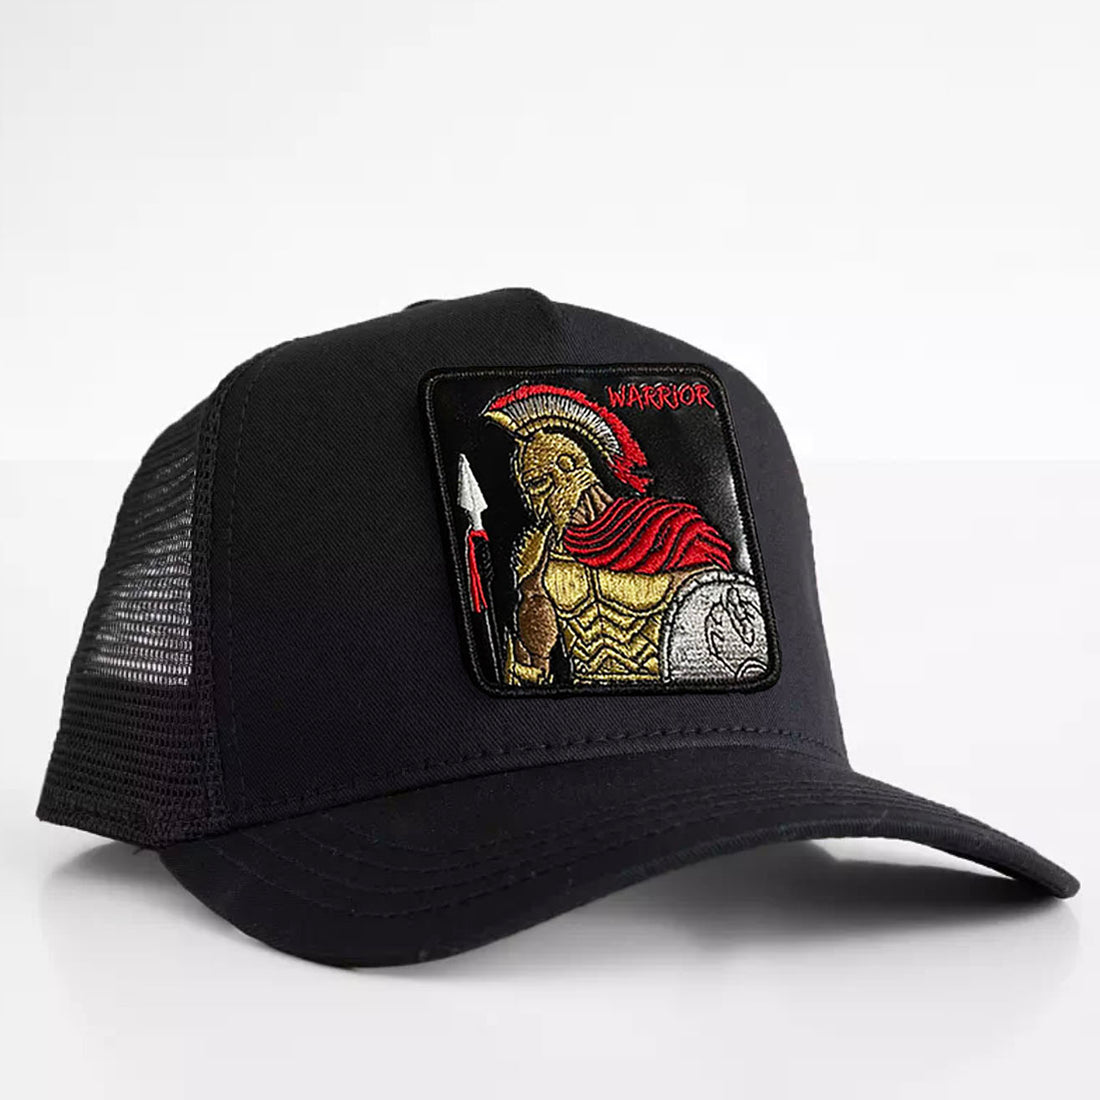 Spartan - "Warrior" Trucker Hat